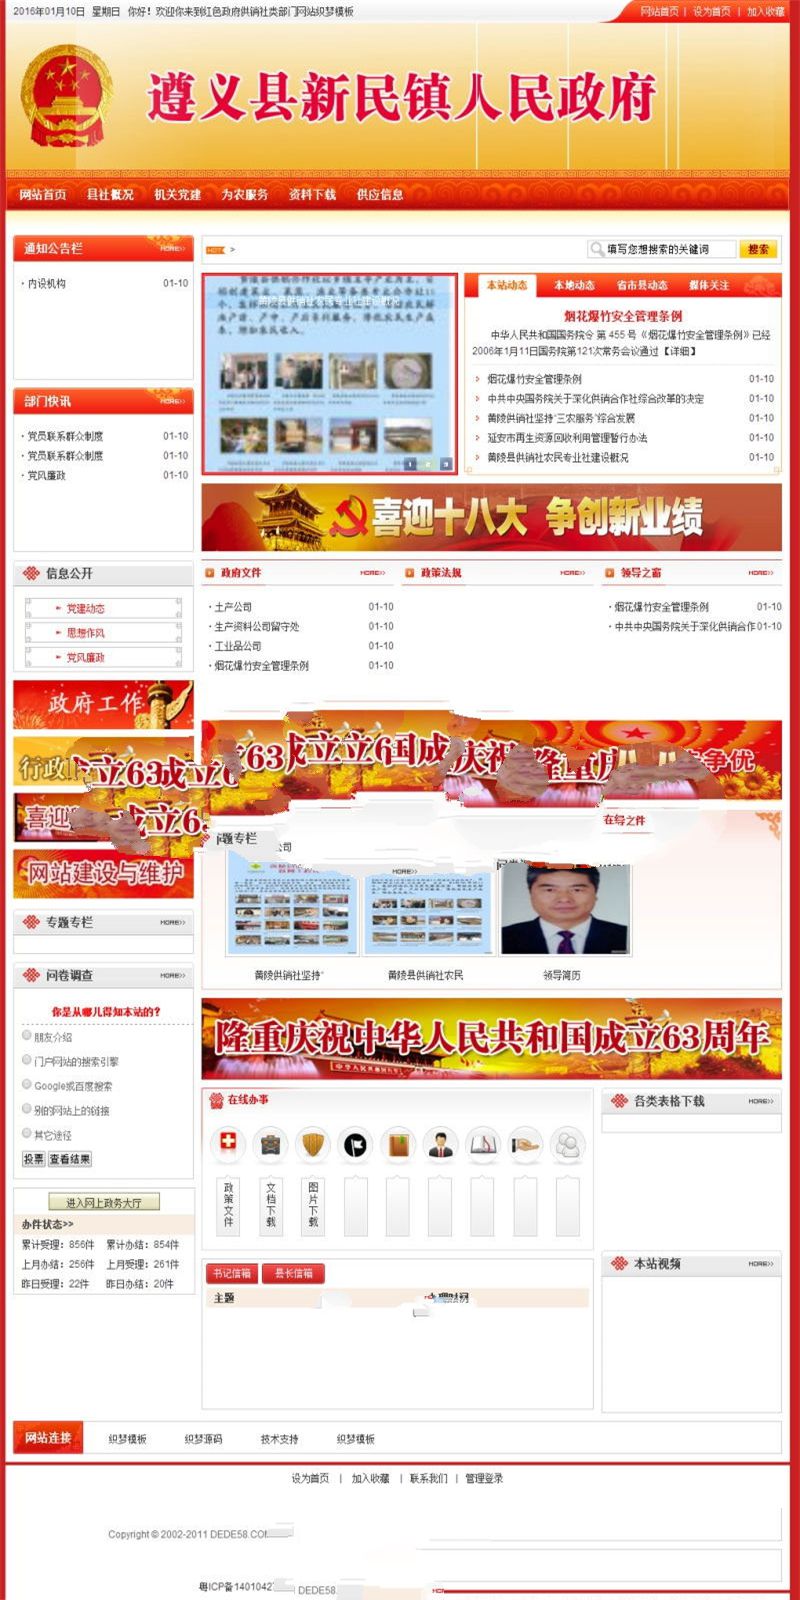 [精品源码]织梦dedecms红色政府部门供销社事业单位网站模板插图